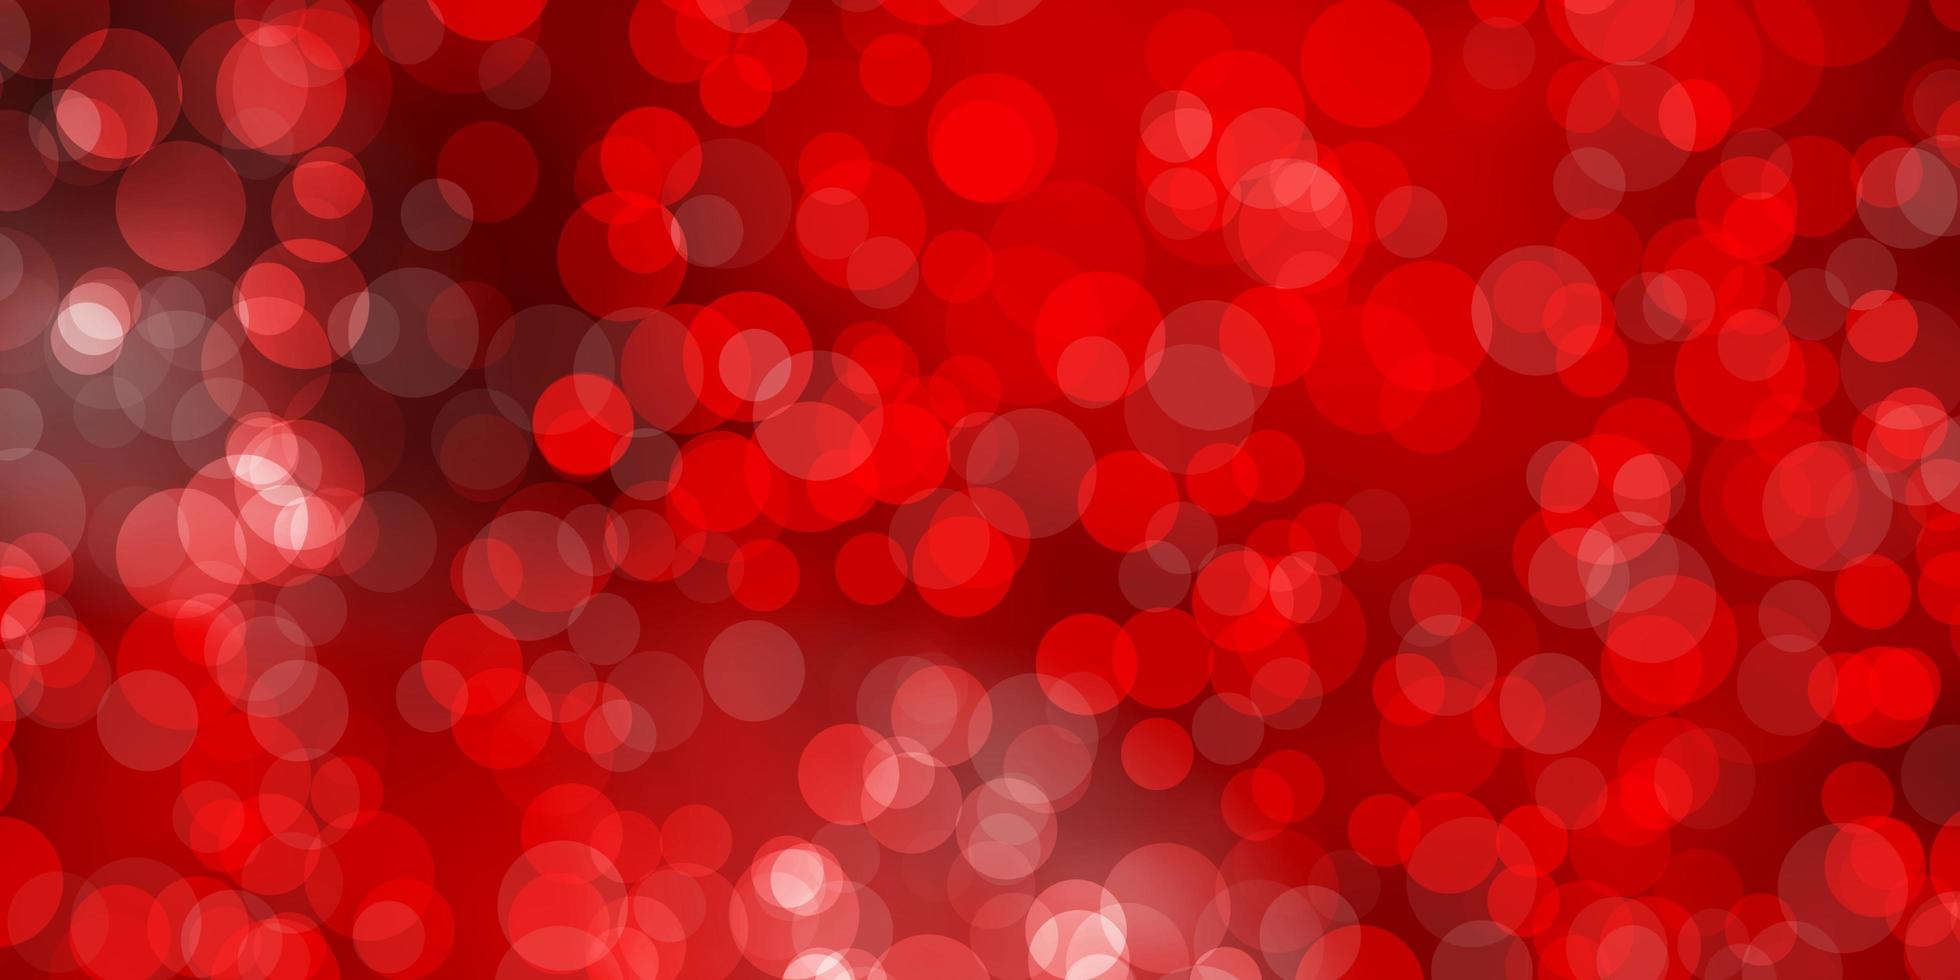 motivo vettoriale rosso chiaro con sfere glitter illustrazione astratta con motivo a gocce colorate per sfondi tende